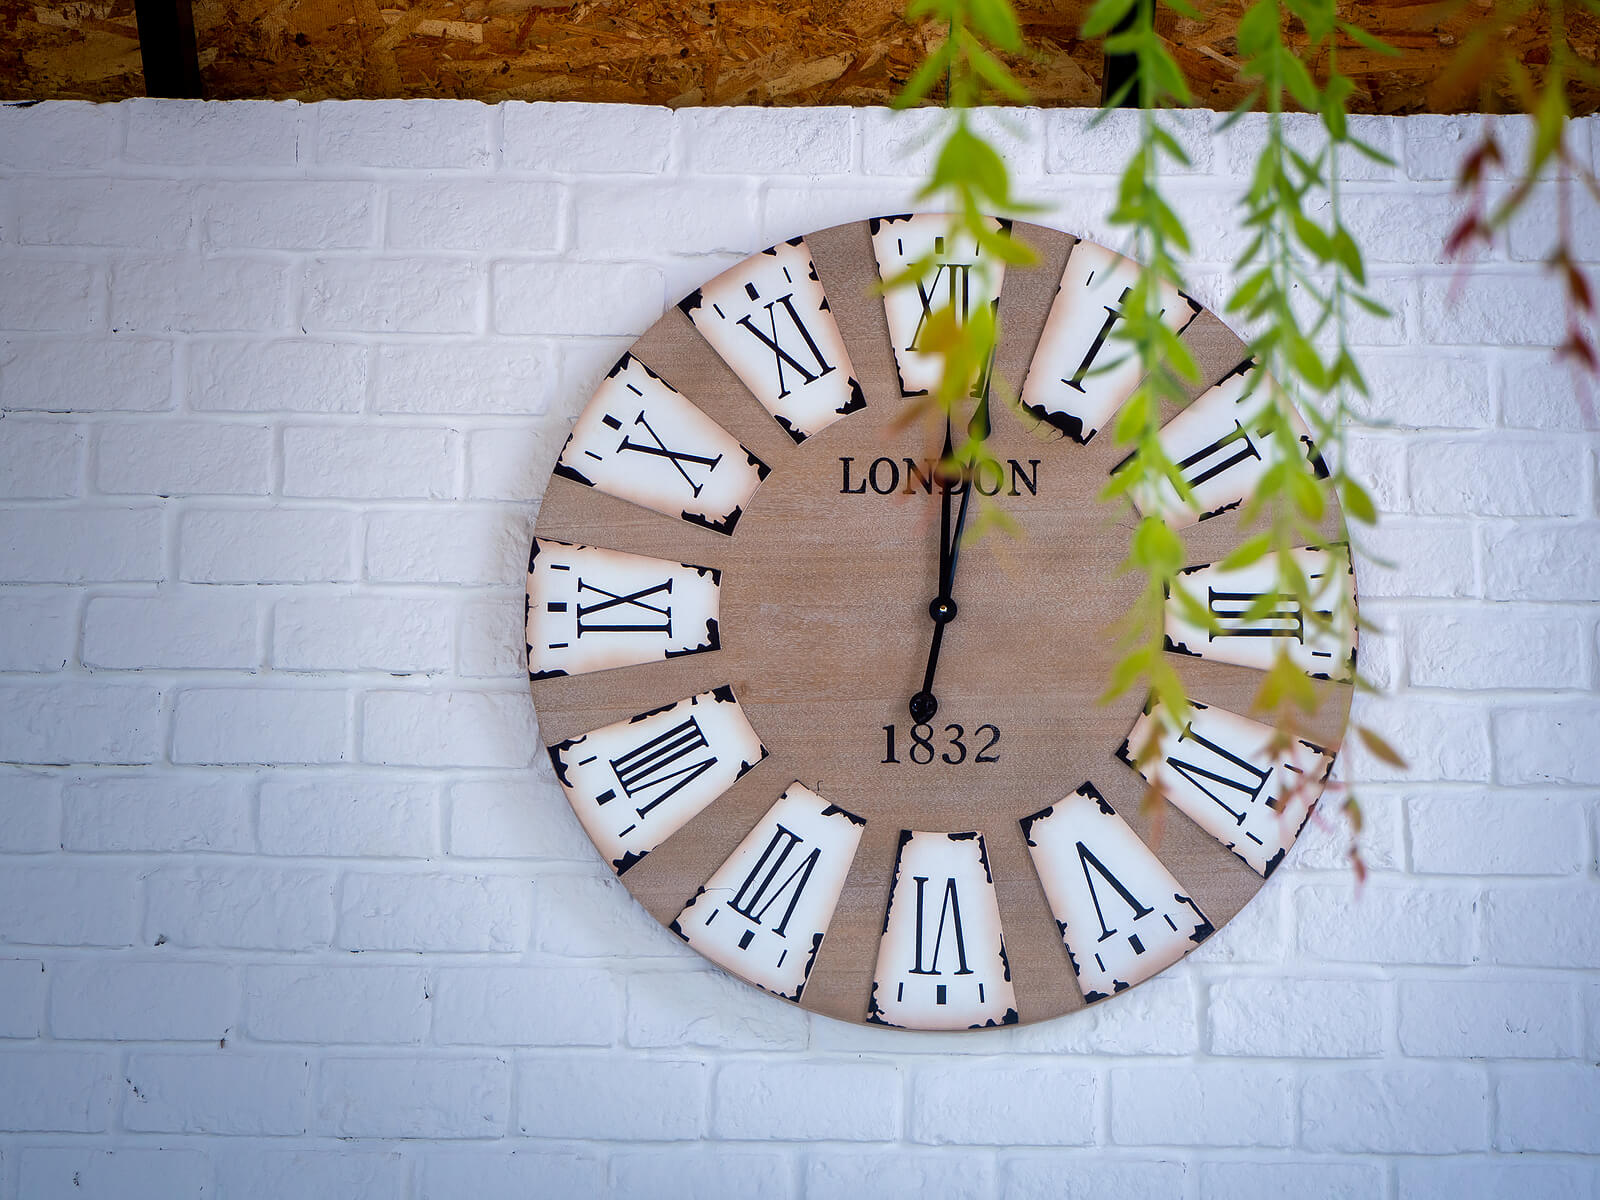 Reloj con las horas en números romanos.